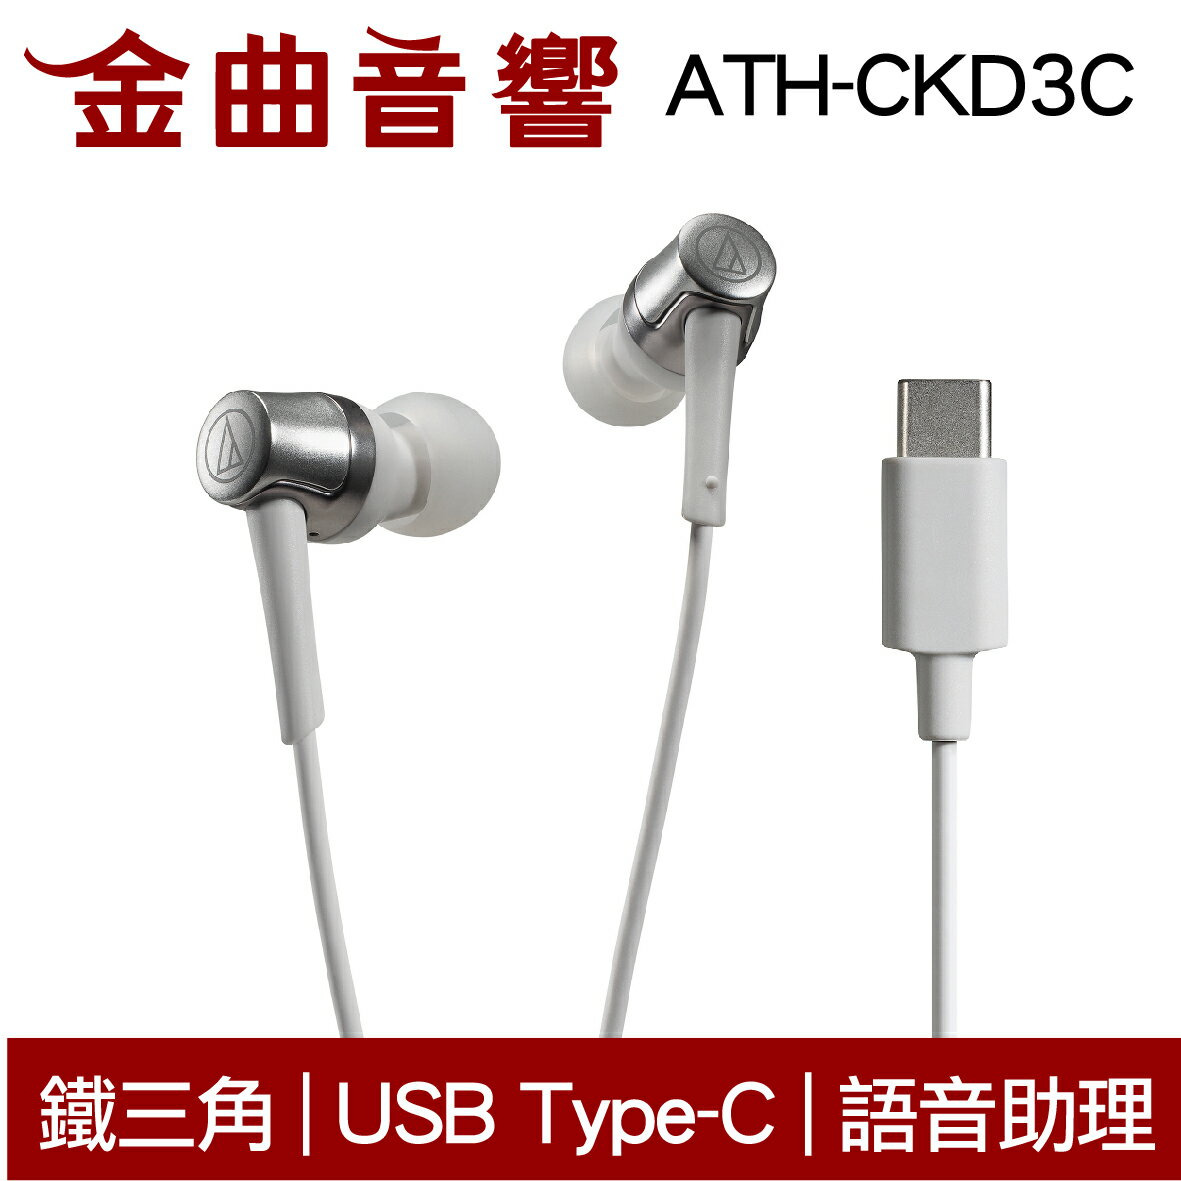 鐵三角 ATH-CKD3C 白 USB Type-C™ 語音助理 耳塞式 耳機 | 金曲音響